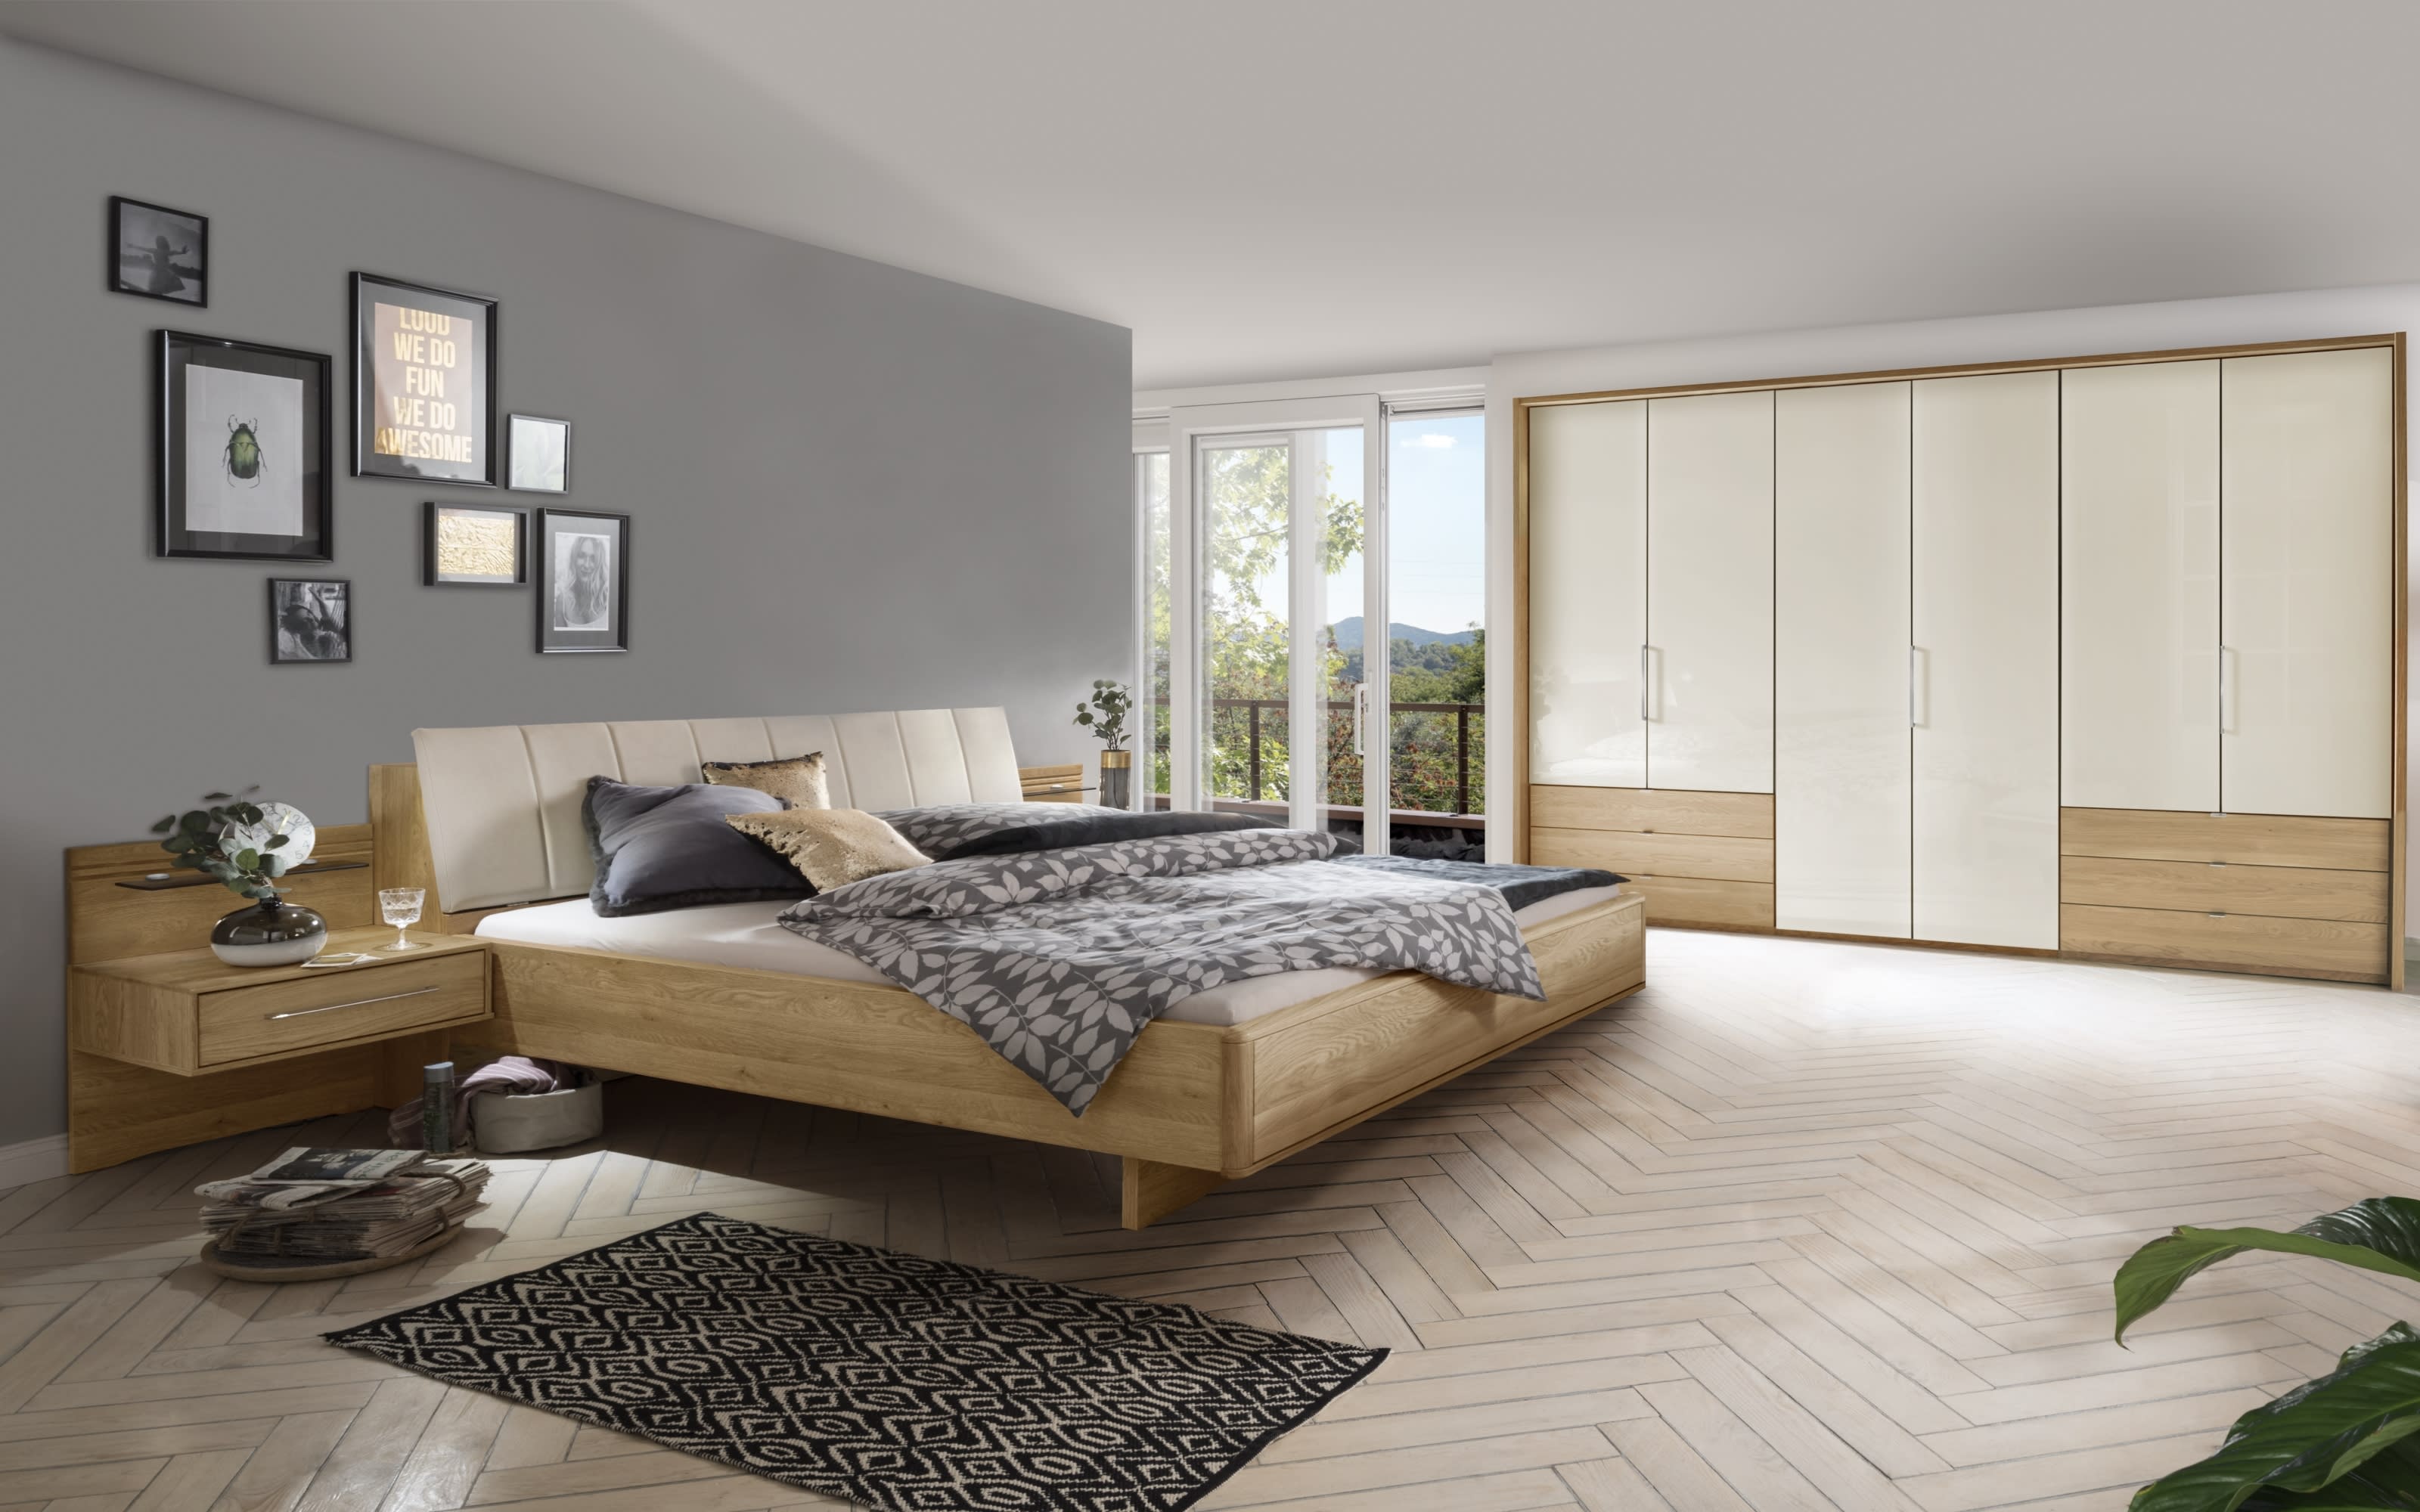 Schlafzimmer Serena Plus, Eiche teilmassiv, 160 x 200 cm, Schrank 300 x 216 cm